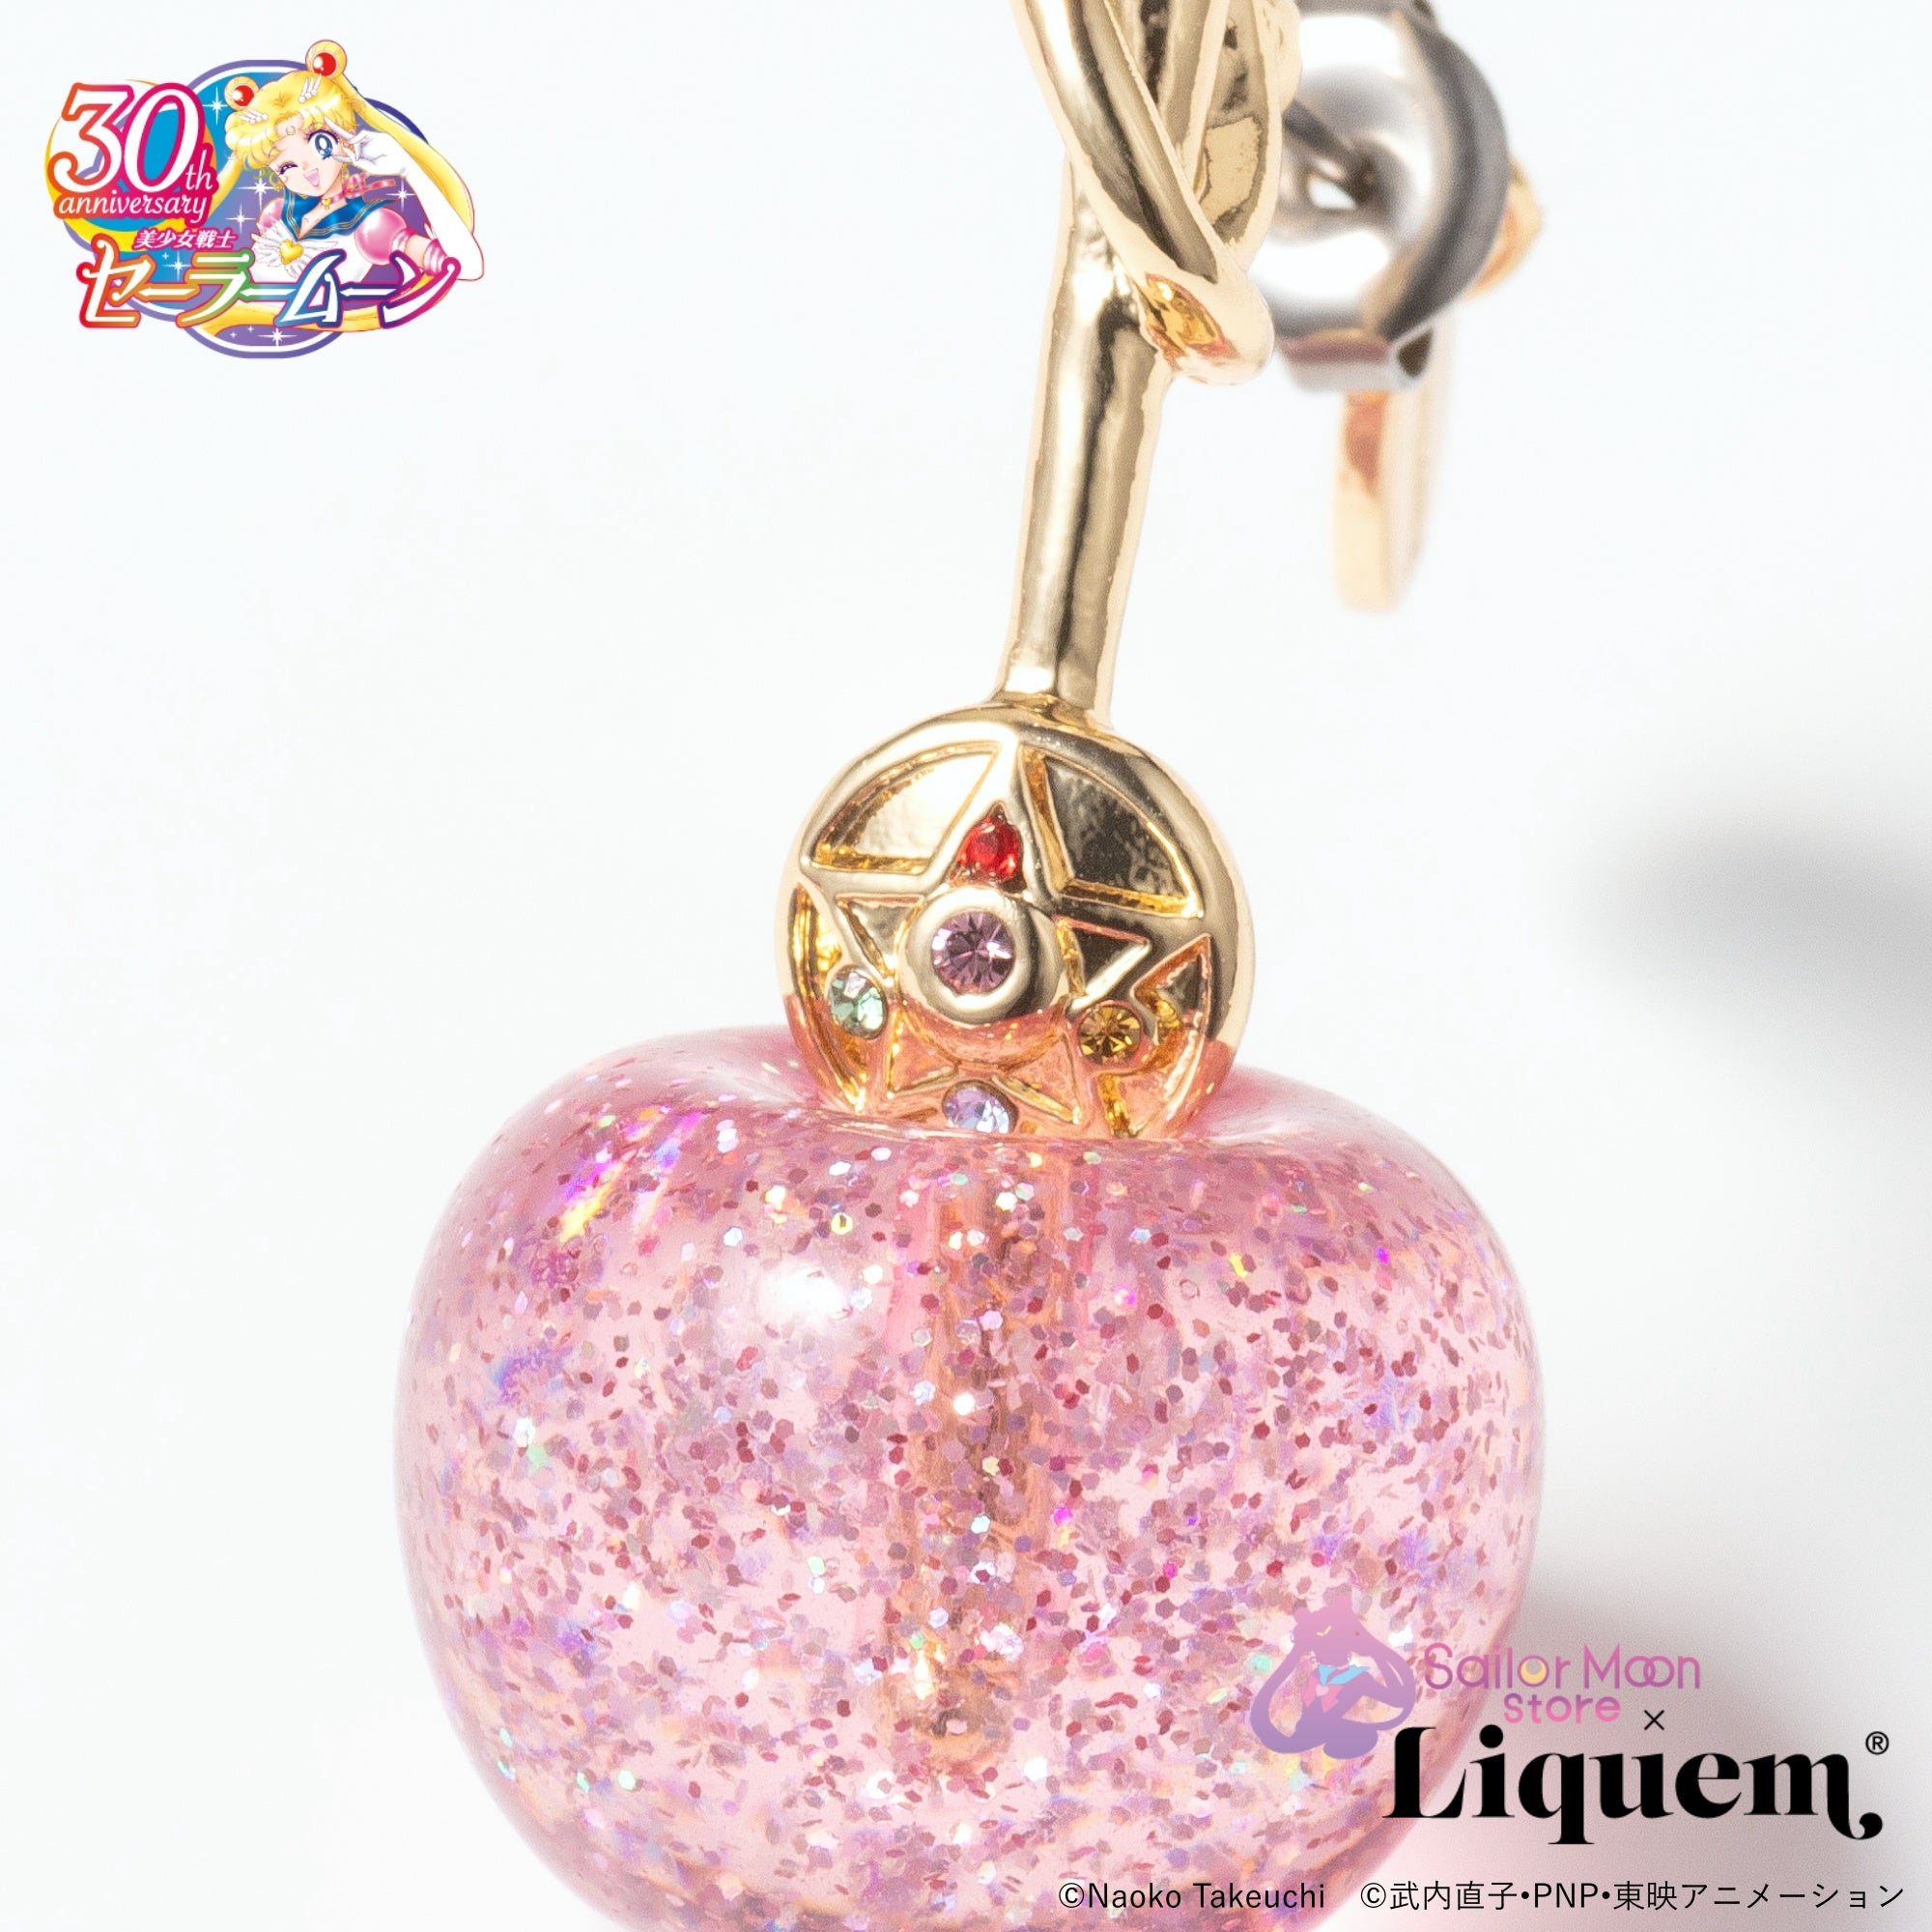 Sailor Moon store x Liquem / チェリーピアス(クリスタルスター 